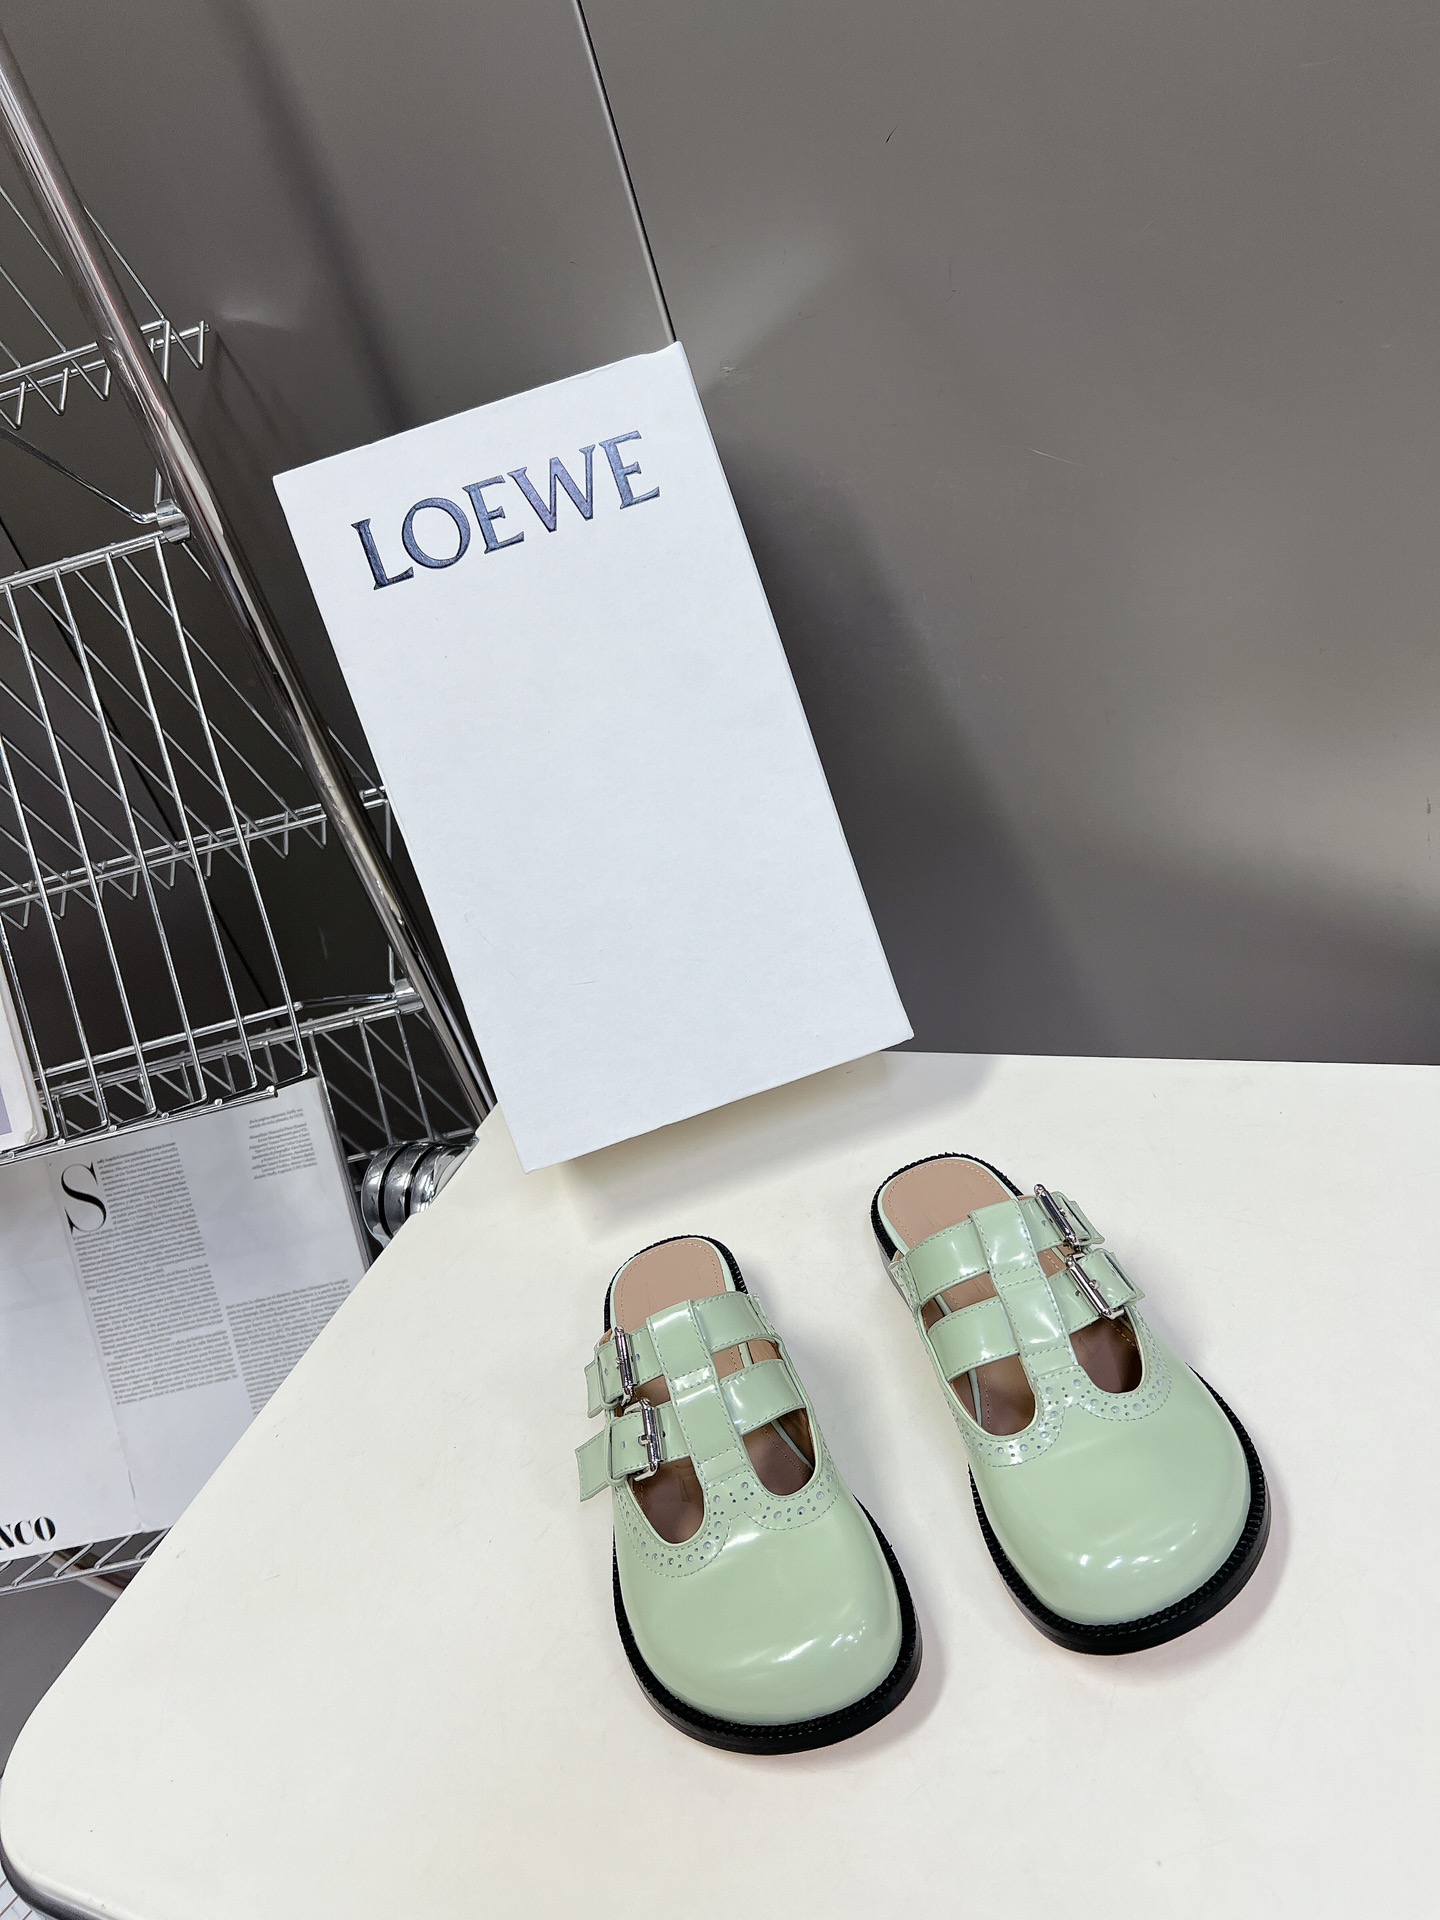 罗意威LoeweCampo2024玛丽珍乐福鞋Loewe全新Campo玛丽珍鞋来自2024早春秀场延续品